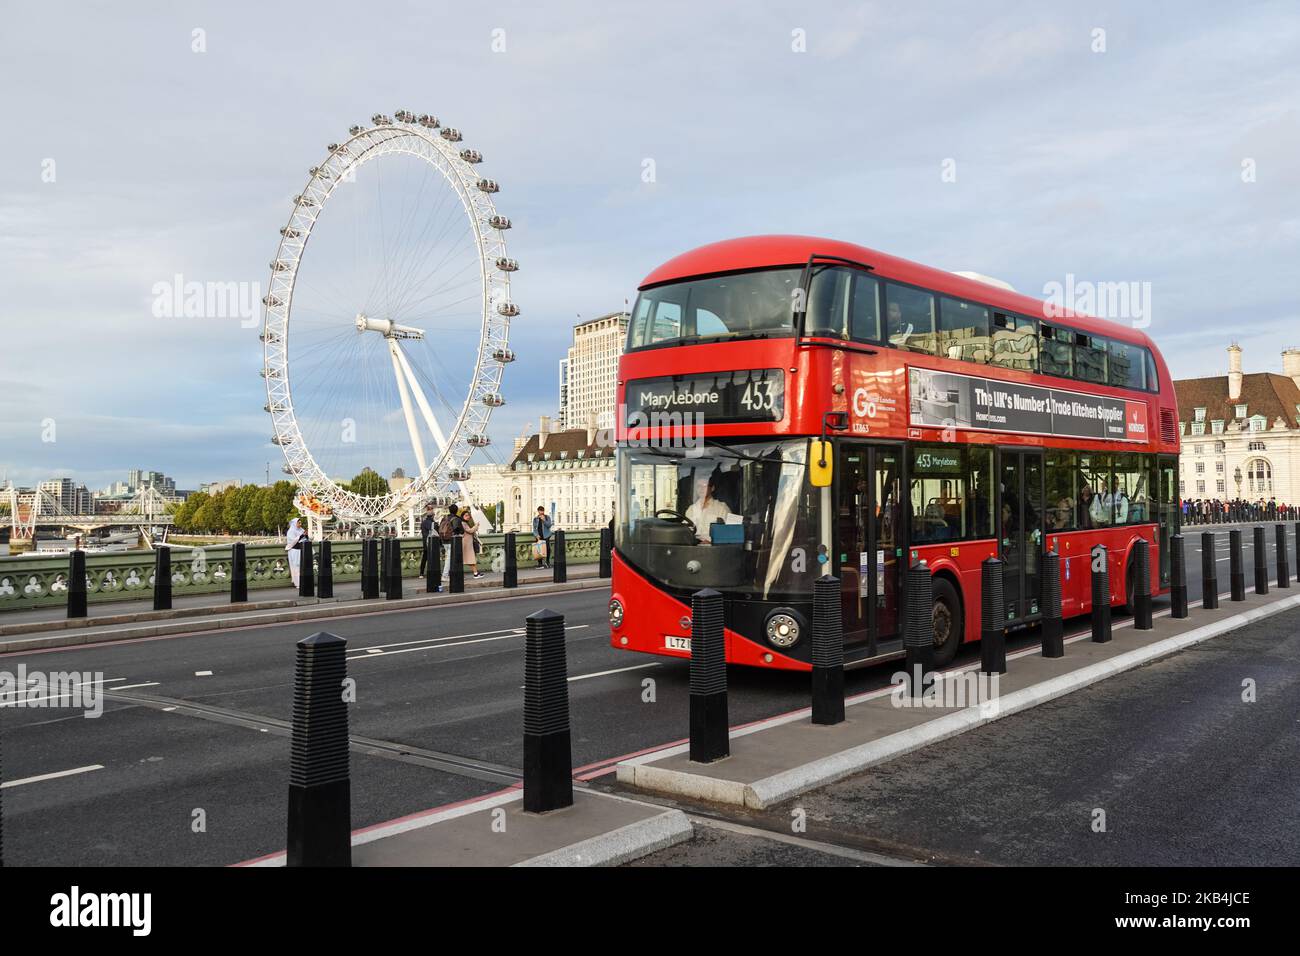 Un bus à impériale de Westminster Bridge London Eye avec en arrière-plan, Londres Angleterre Royaume-Uni UK Banque D'Images